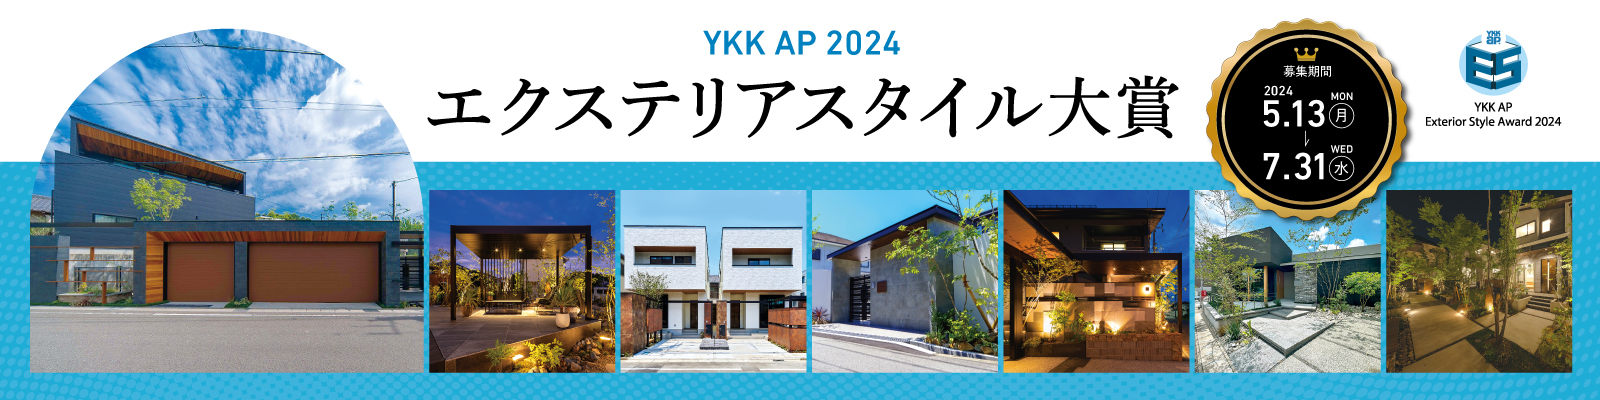 YKK AP 2024 エクステリア スタイル大賞